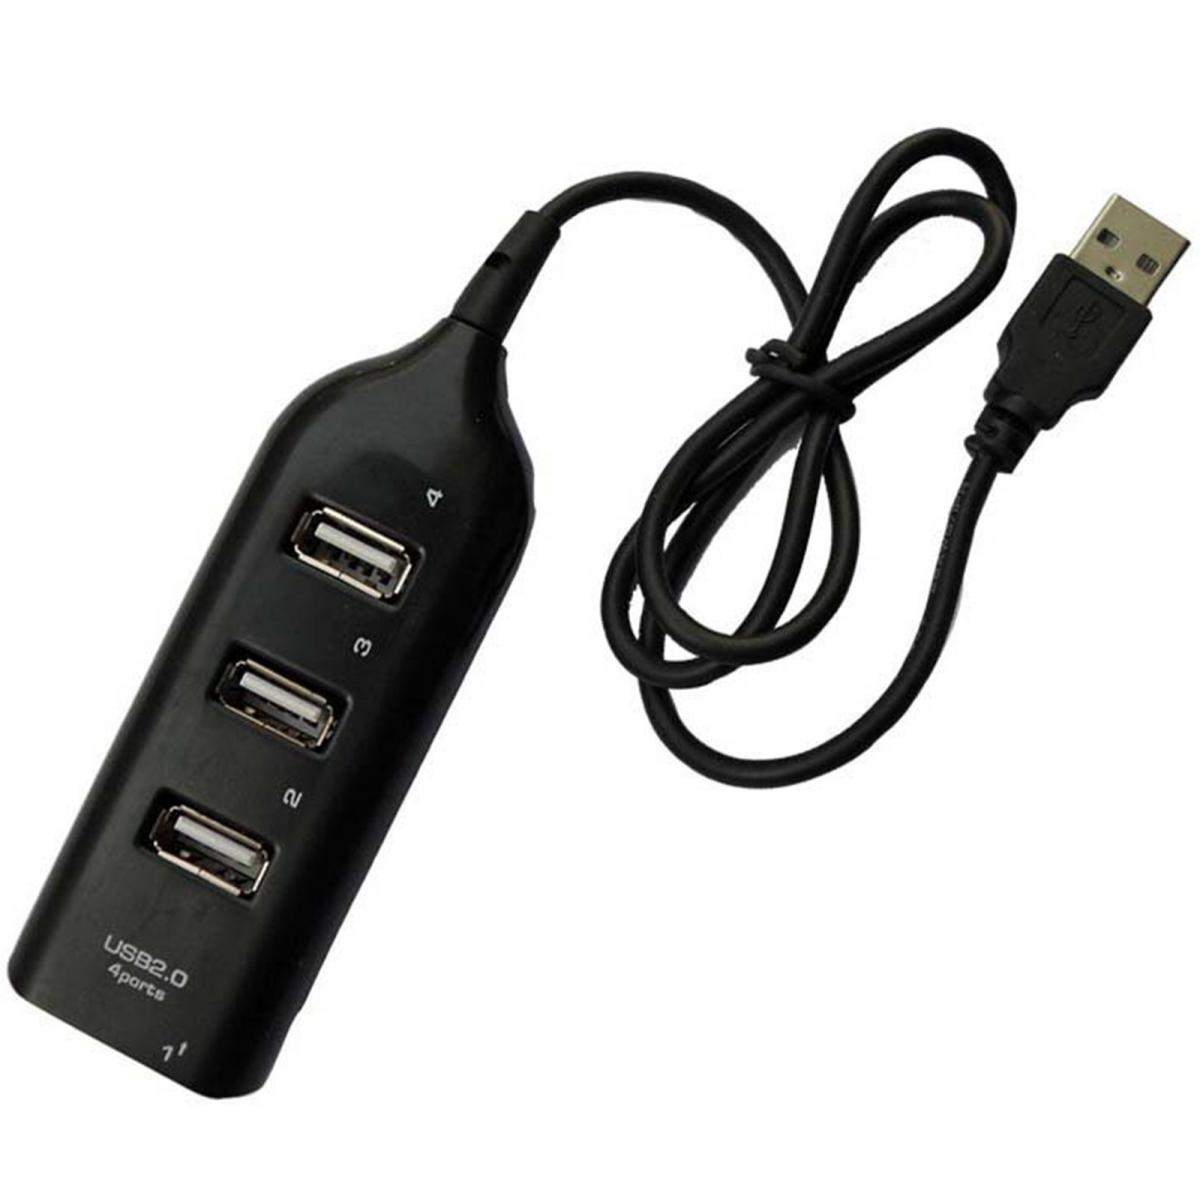 CABLE LADRON USB MULTIPUERTO ADAPTADOR DUPLICADOR CONEXION 2.0 NEGRO